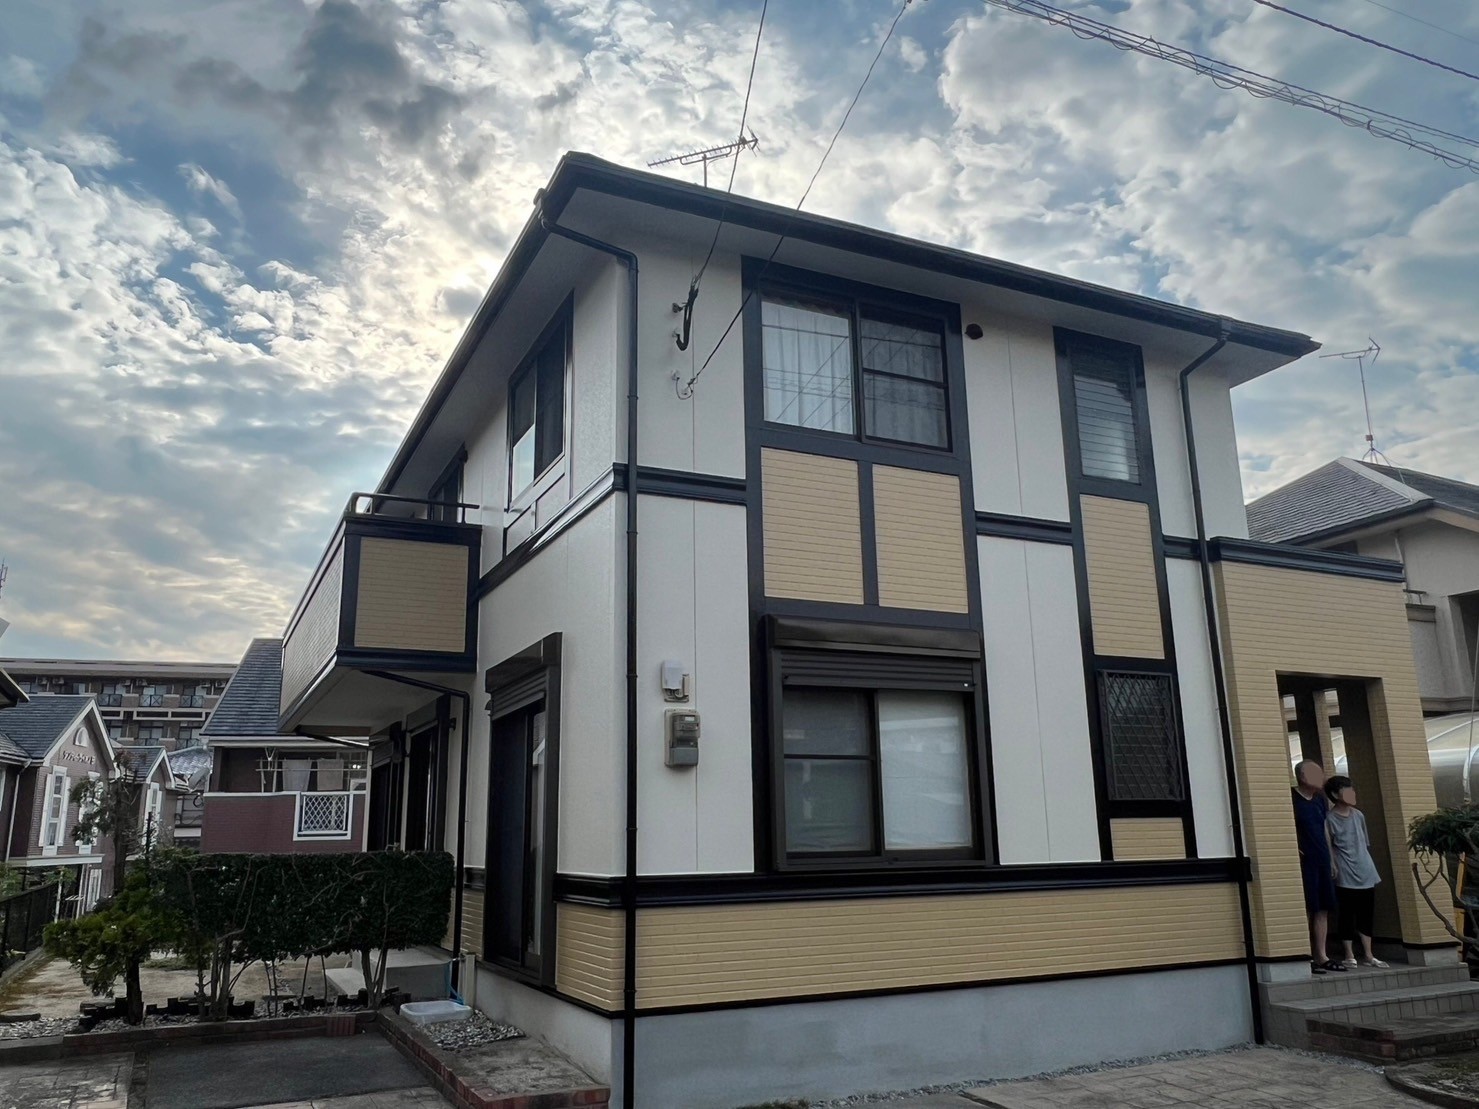 福岡県太宰府市石坂のM様邸をハウジングコート一押しの塗料を使用して外壁屋根を新築の様に塗装しました。7/22完成です。【ご来店より】